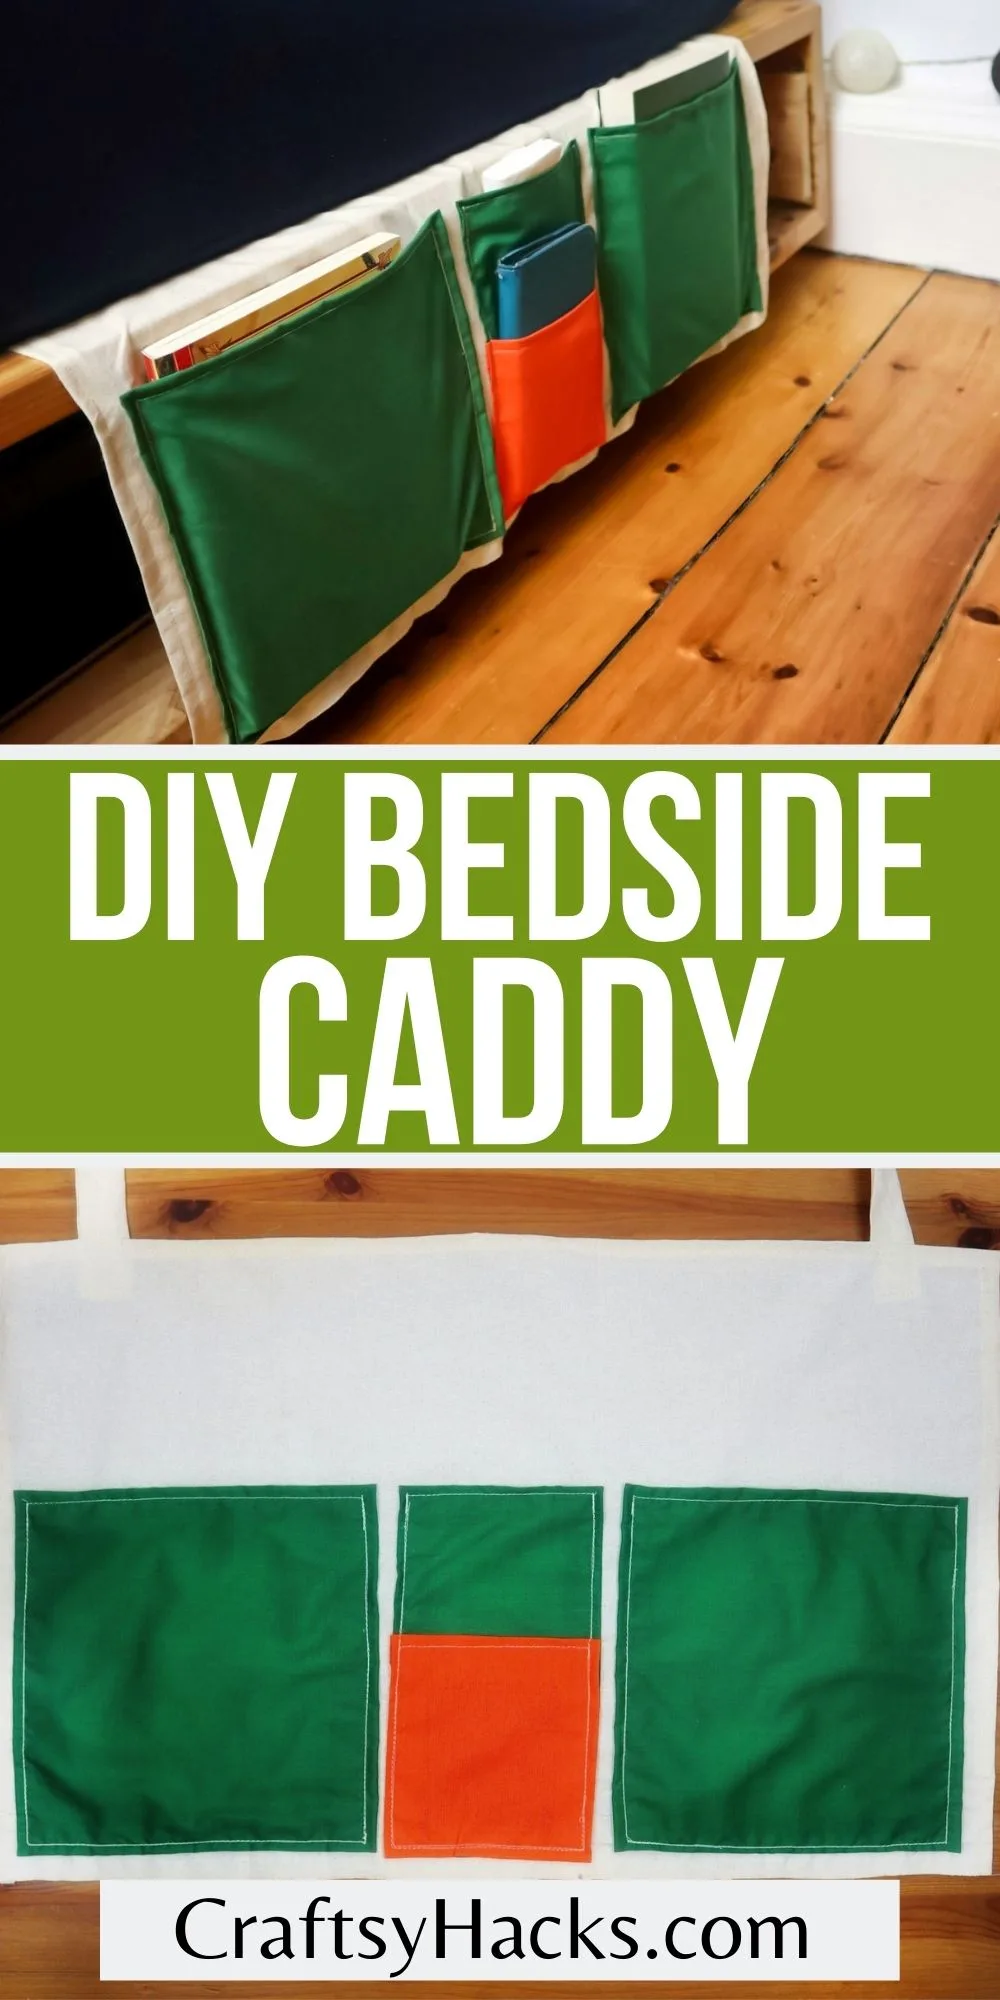 diy bedside caddy